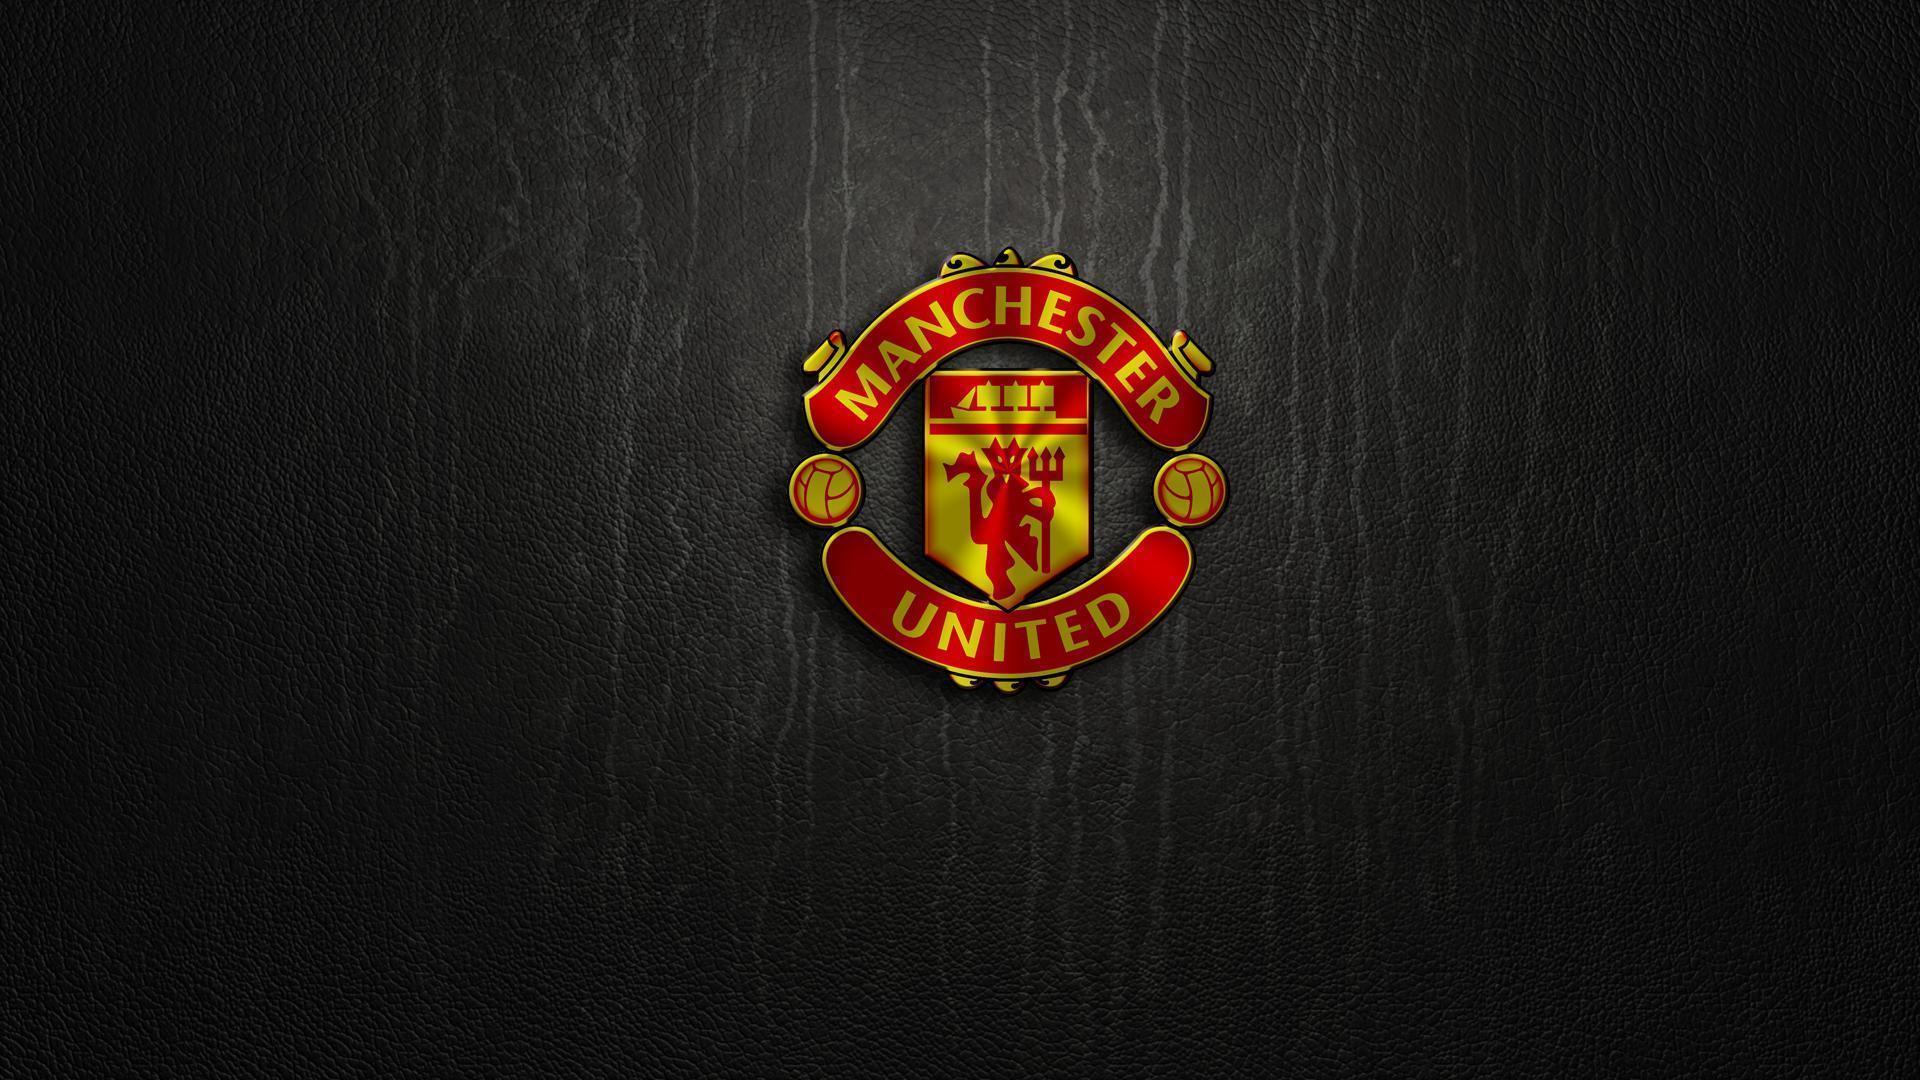 Manchester United High Def Logo Wallpaper. Wallpaper